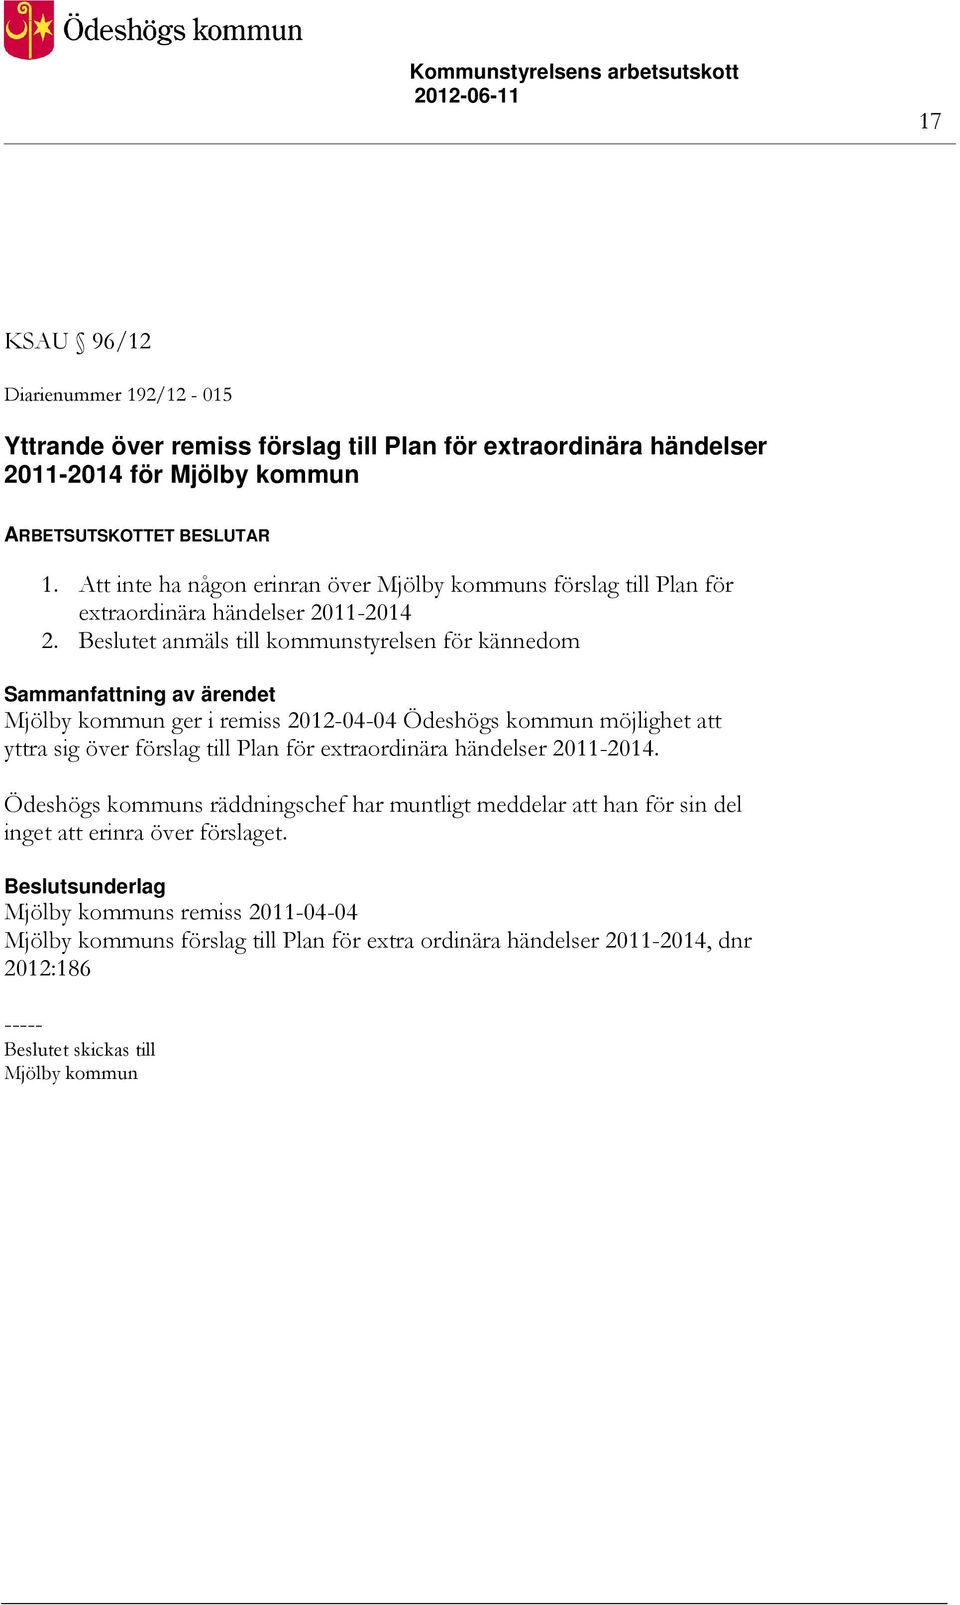 Beslutet anmäls till kommunstyrelsen för kännedom Mjölby kommun ger i remiss 2012-04-04 Ödeshögs kommun möjlighet att yttra sig över förslag till Plan för extraordinära händelser